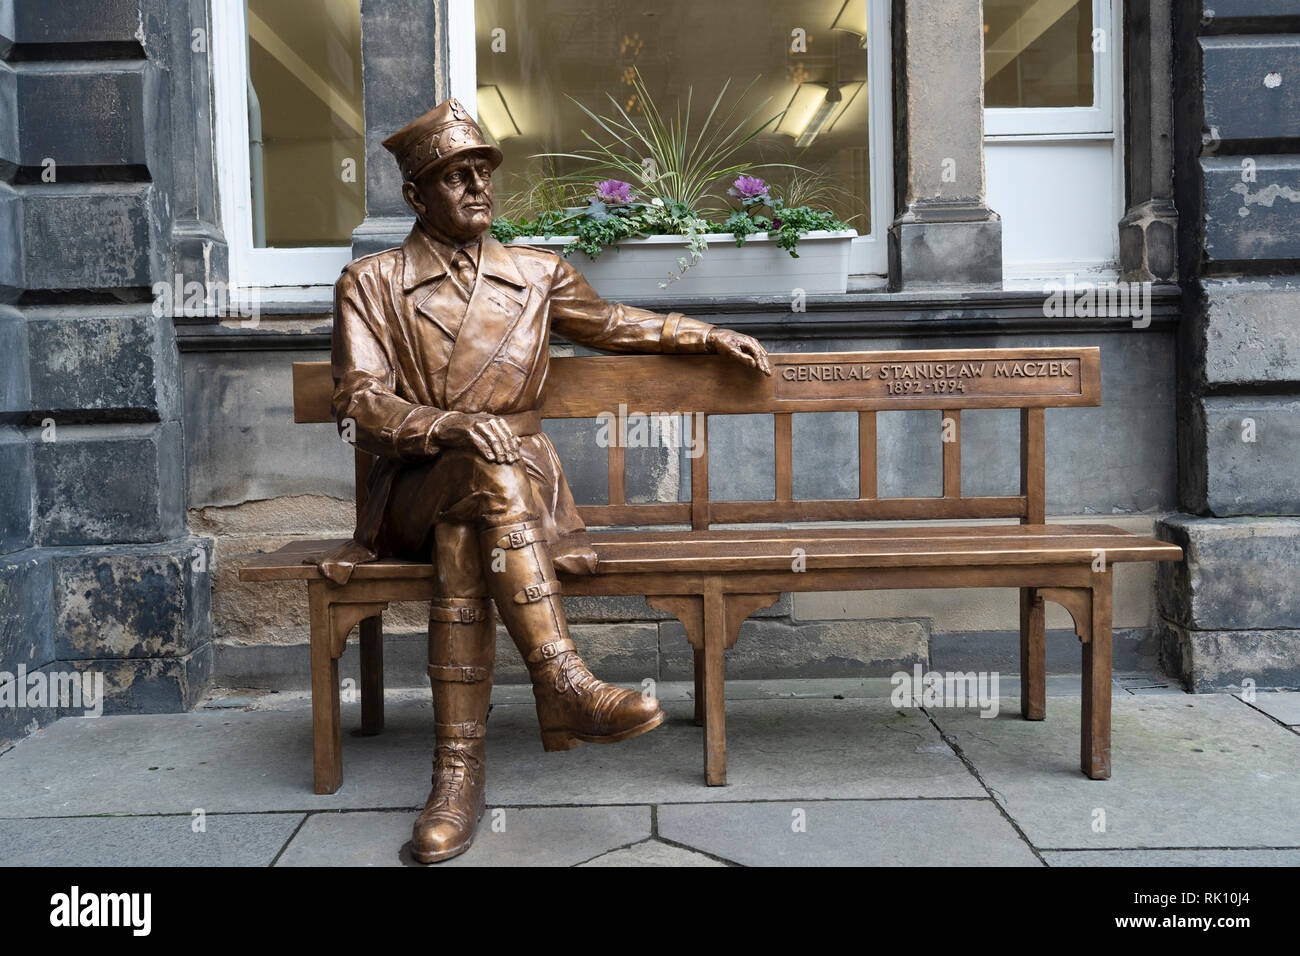 Statue de héros de guerre polonais le général Maczek au City Chambers dans la vieille ville d'Édimbourg, Écosse, Royaume-Uni Banque D'Images